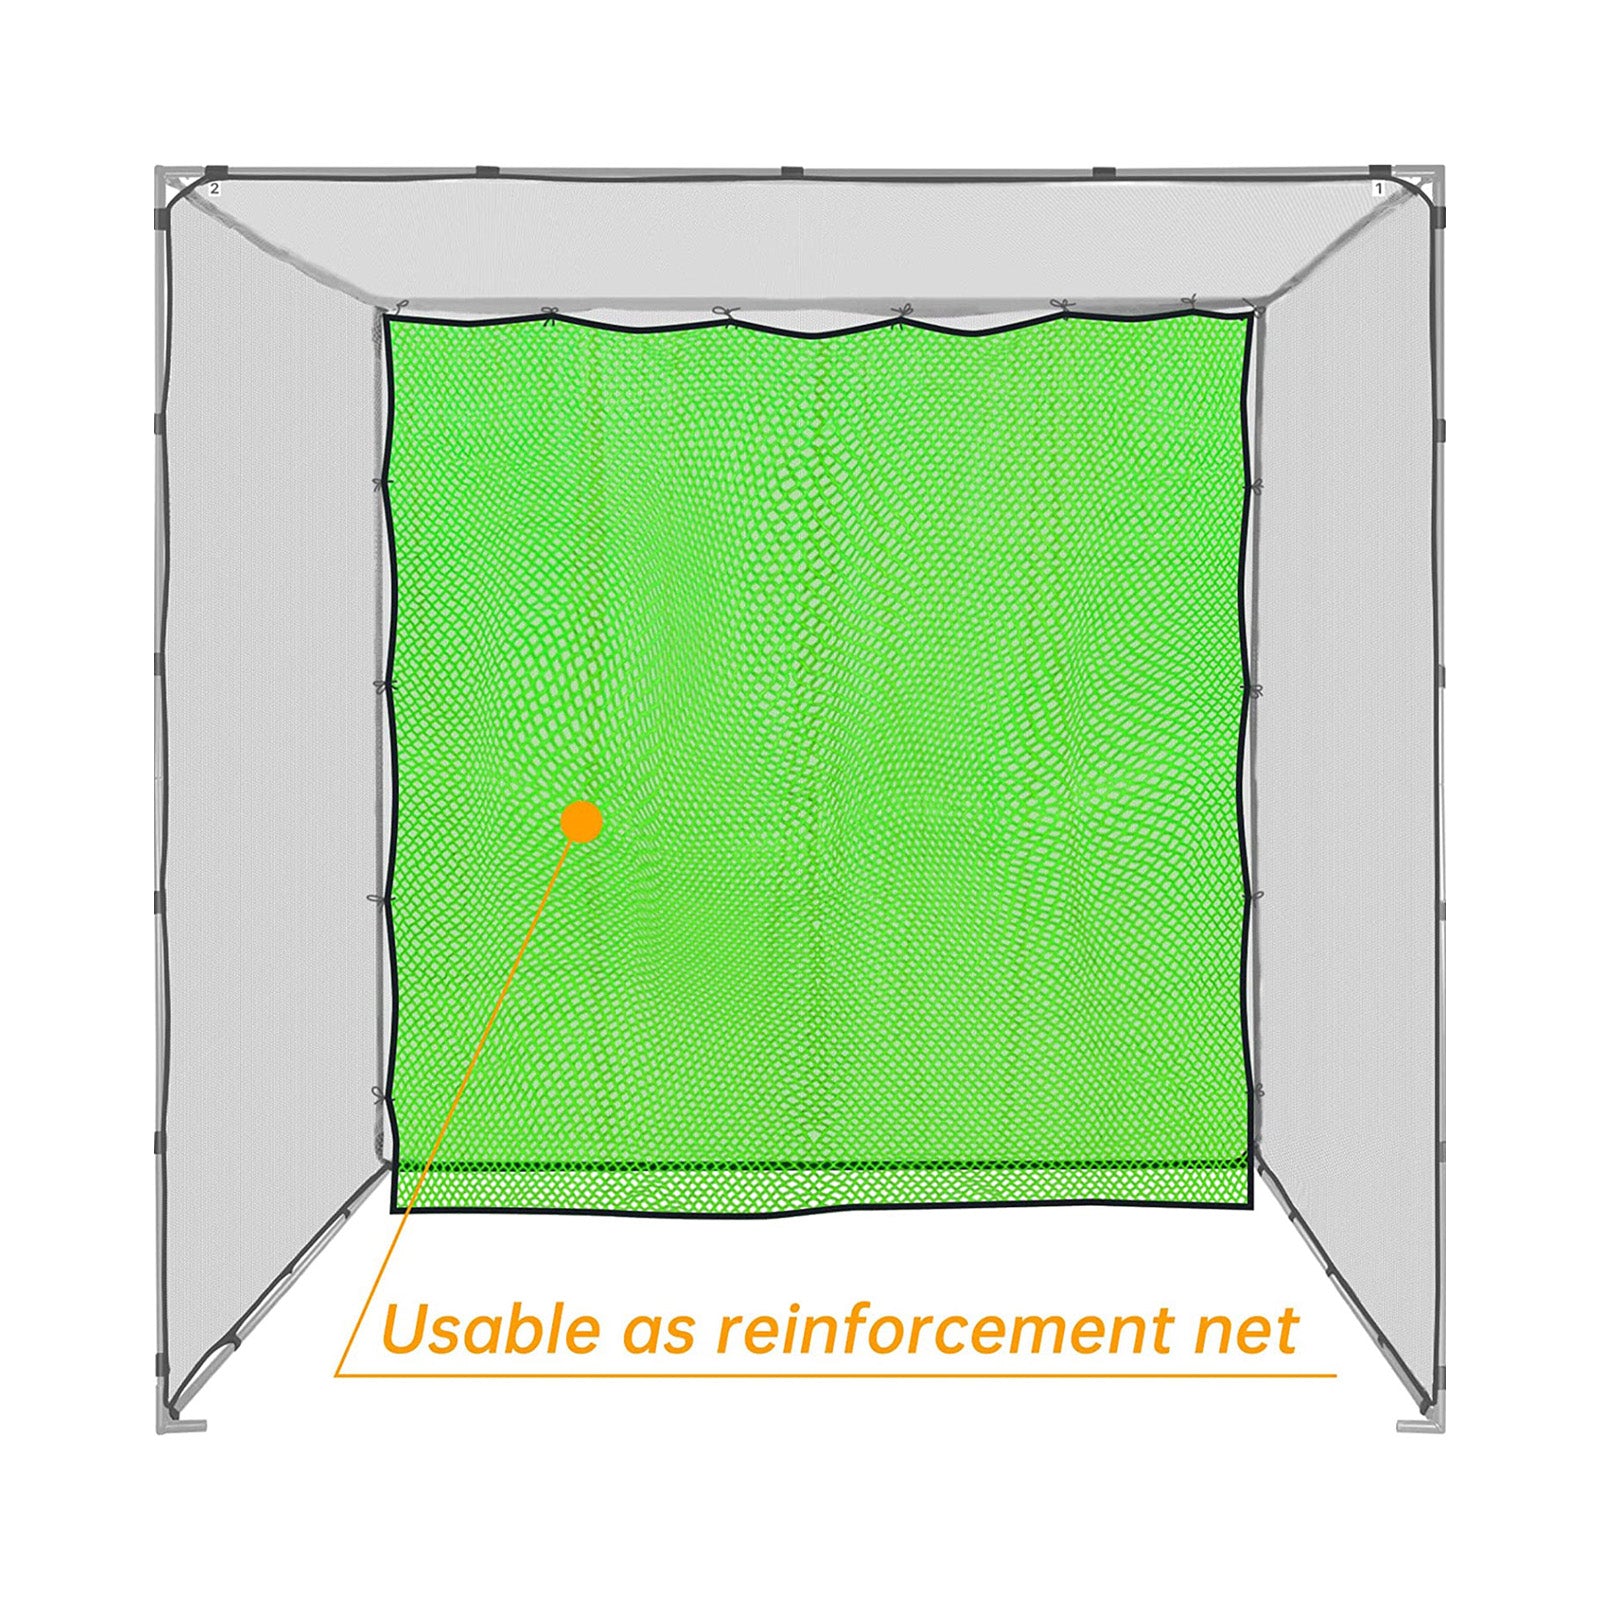 Pièce nette de remplacement de cage de golf Galileo 10x20/bonne résilience